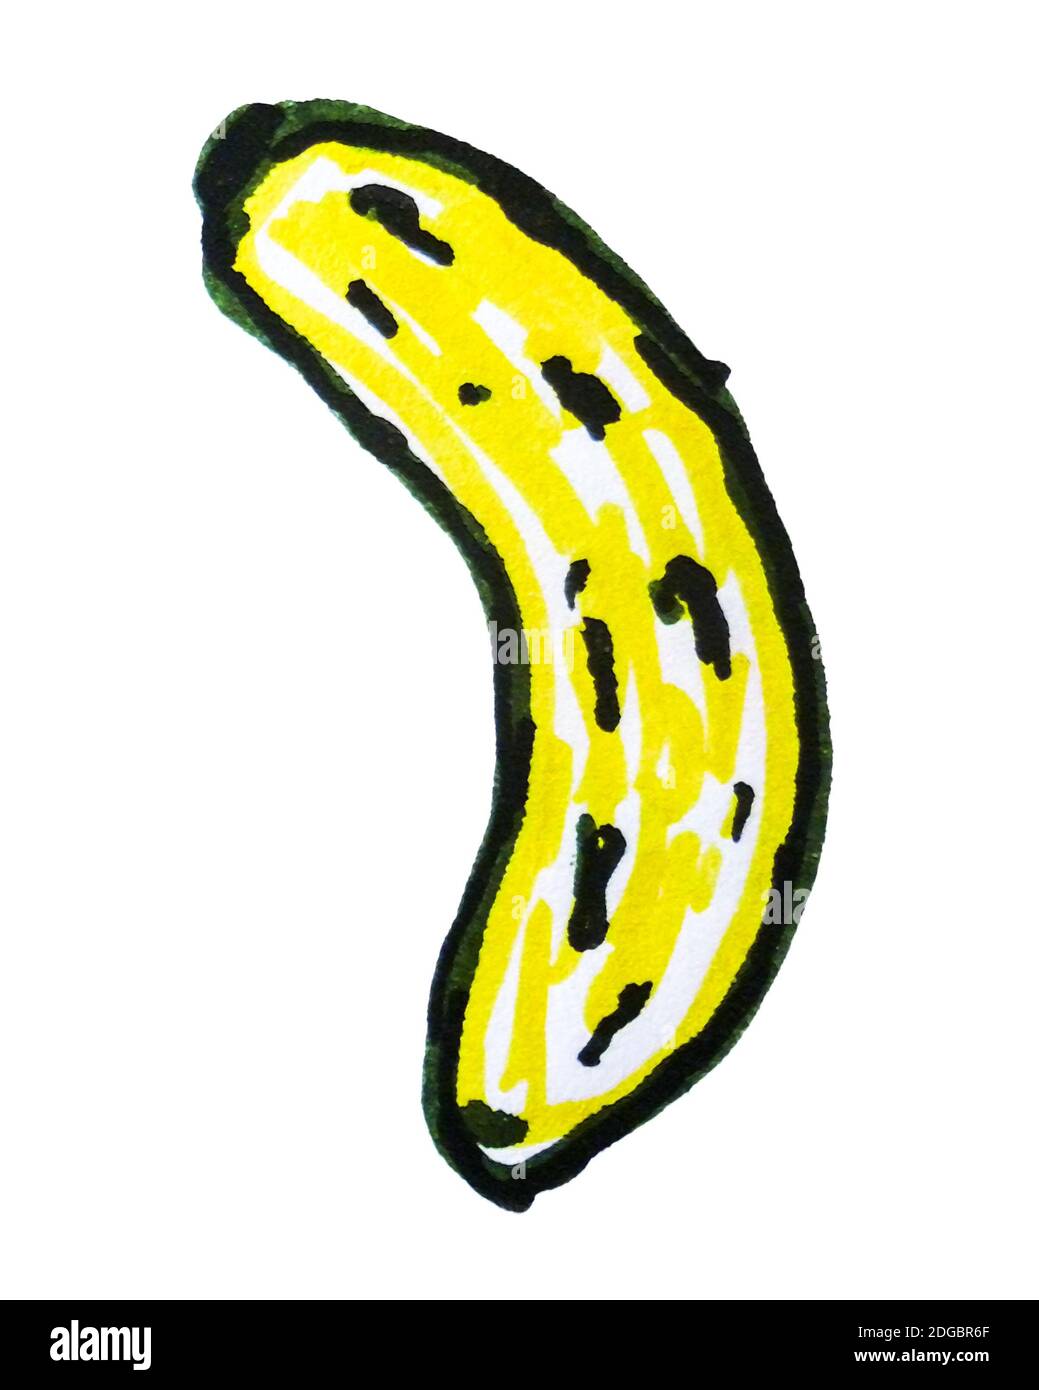 Isolated Banana Cartoon Drawing Stock Photo - Alamy